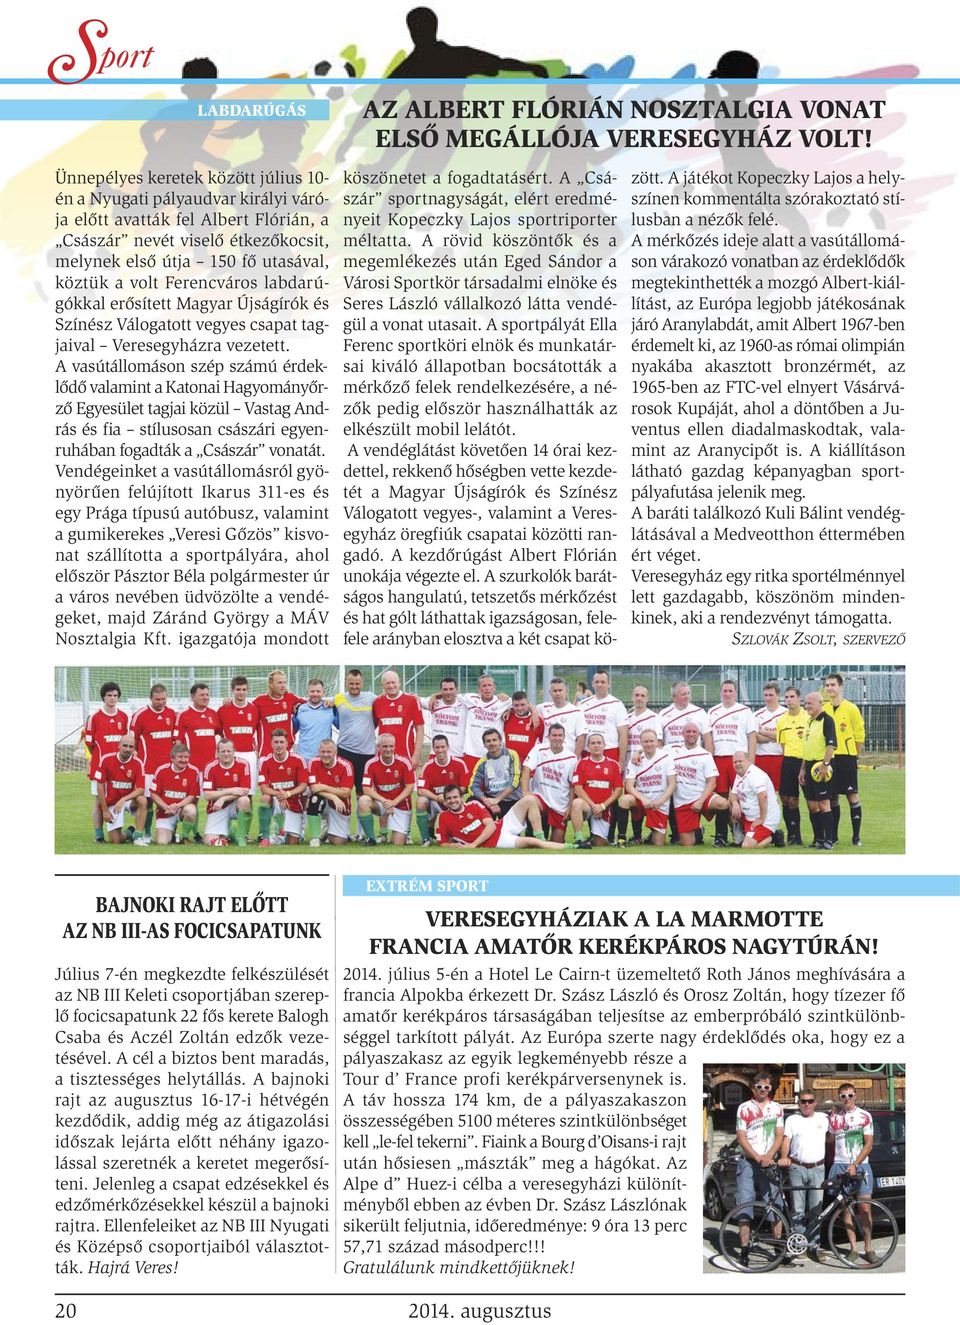 Ferencváros labdarú - gókkal erősített Magyar Újságírók és Színész Válogatott vegyes csapat tagjaival Veresegyházra vezetett.